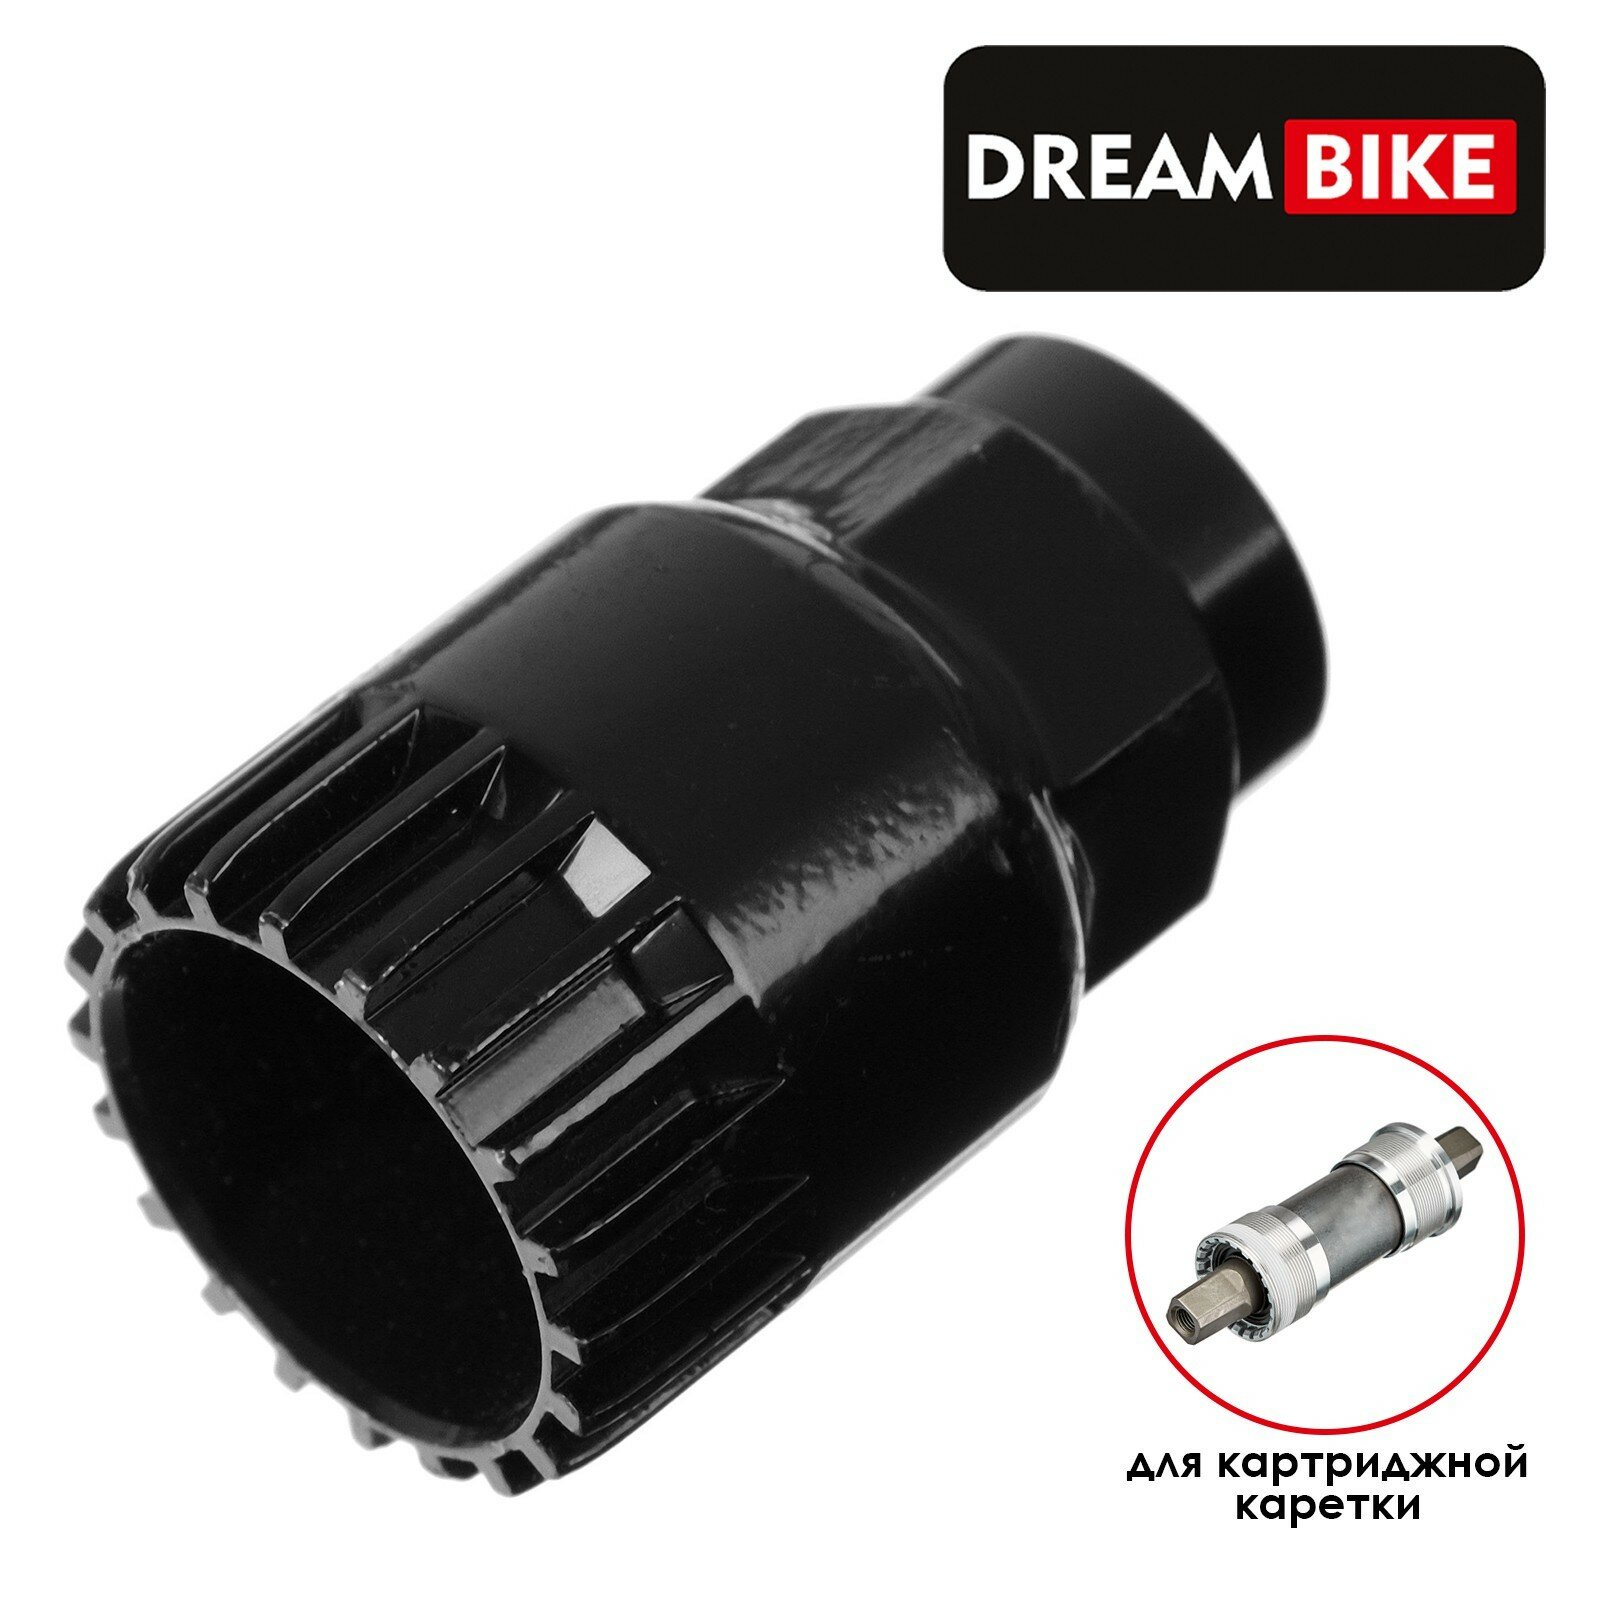 Съёмник каретки Dream Bike GJ-022-1 (1шт.)